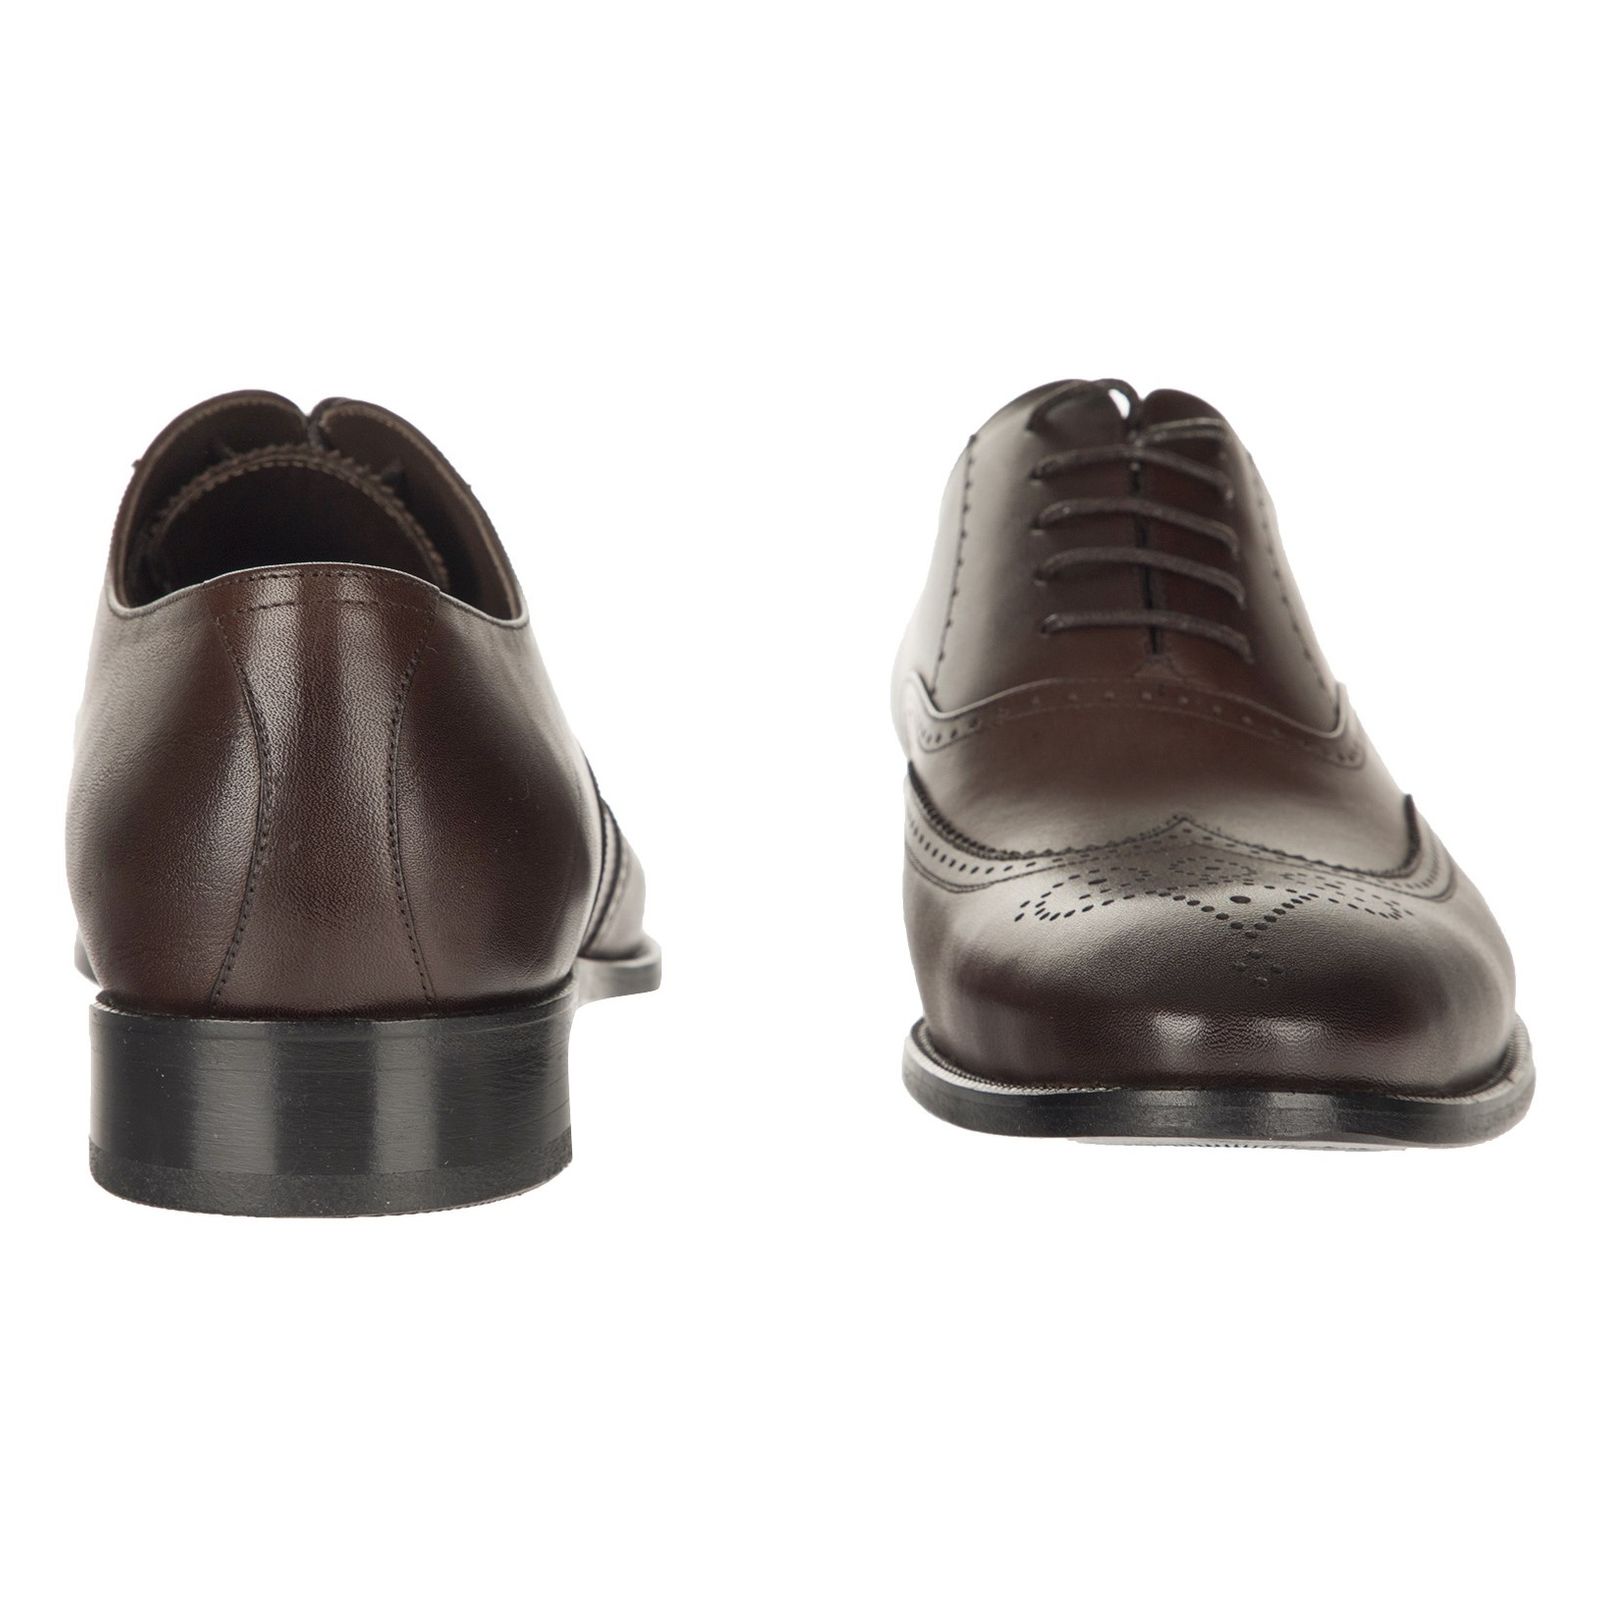 کفش رسمی چرم مردانه - گاندو - قهوه ای - 5